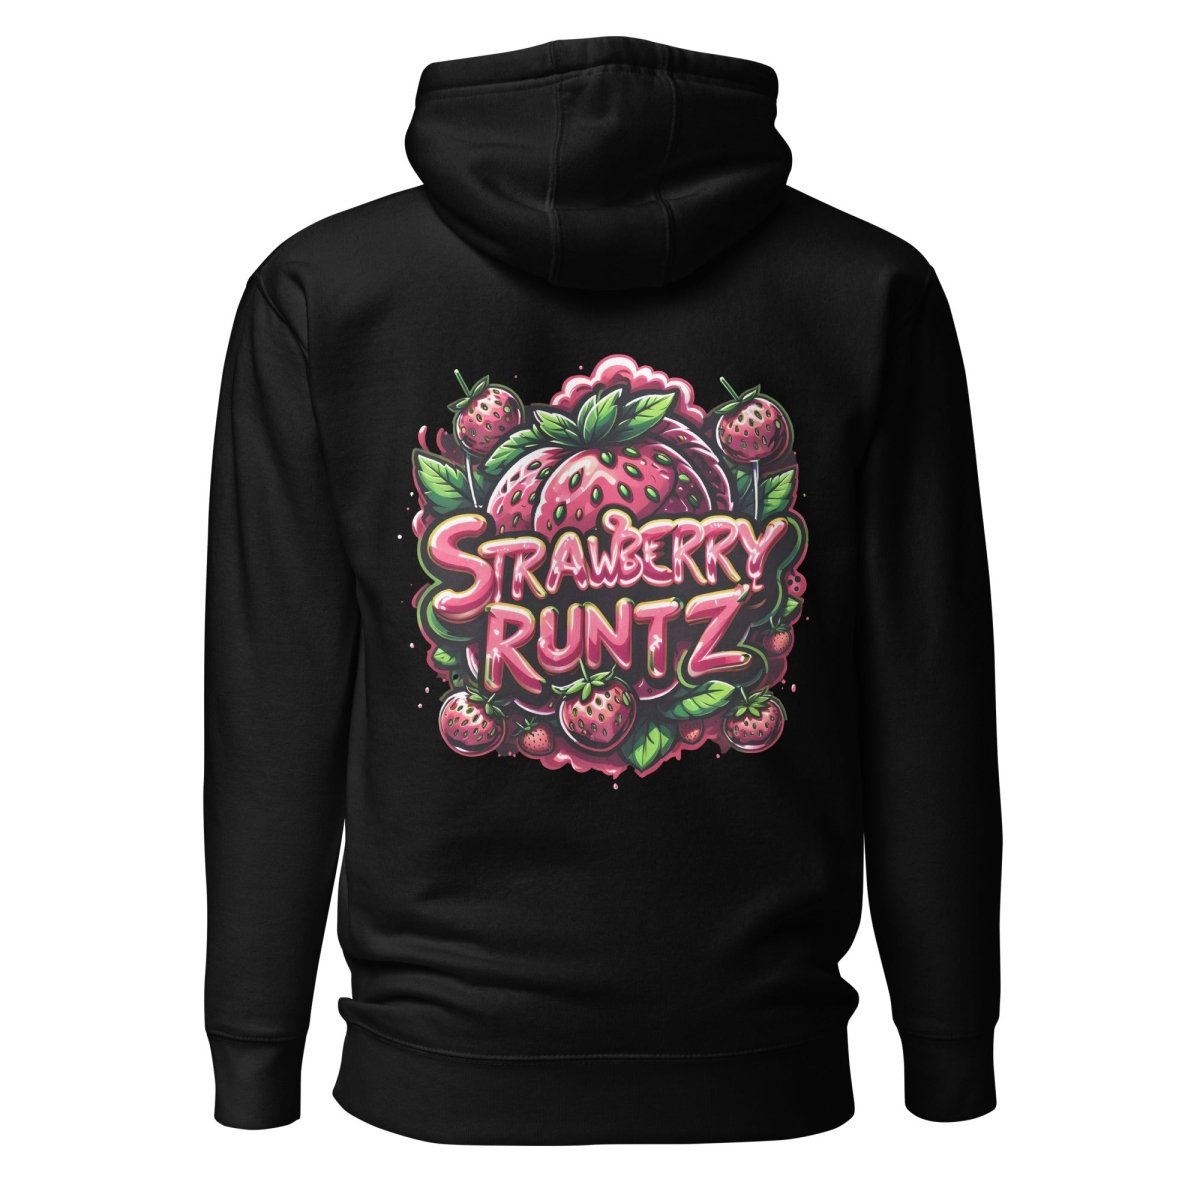 Strawberry Runtz Hoodie - Mainly High